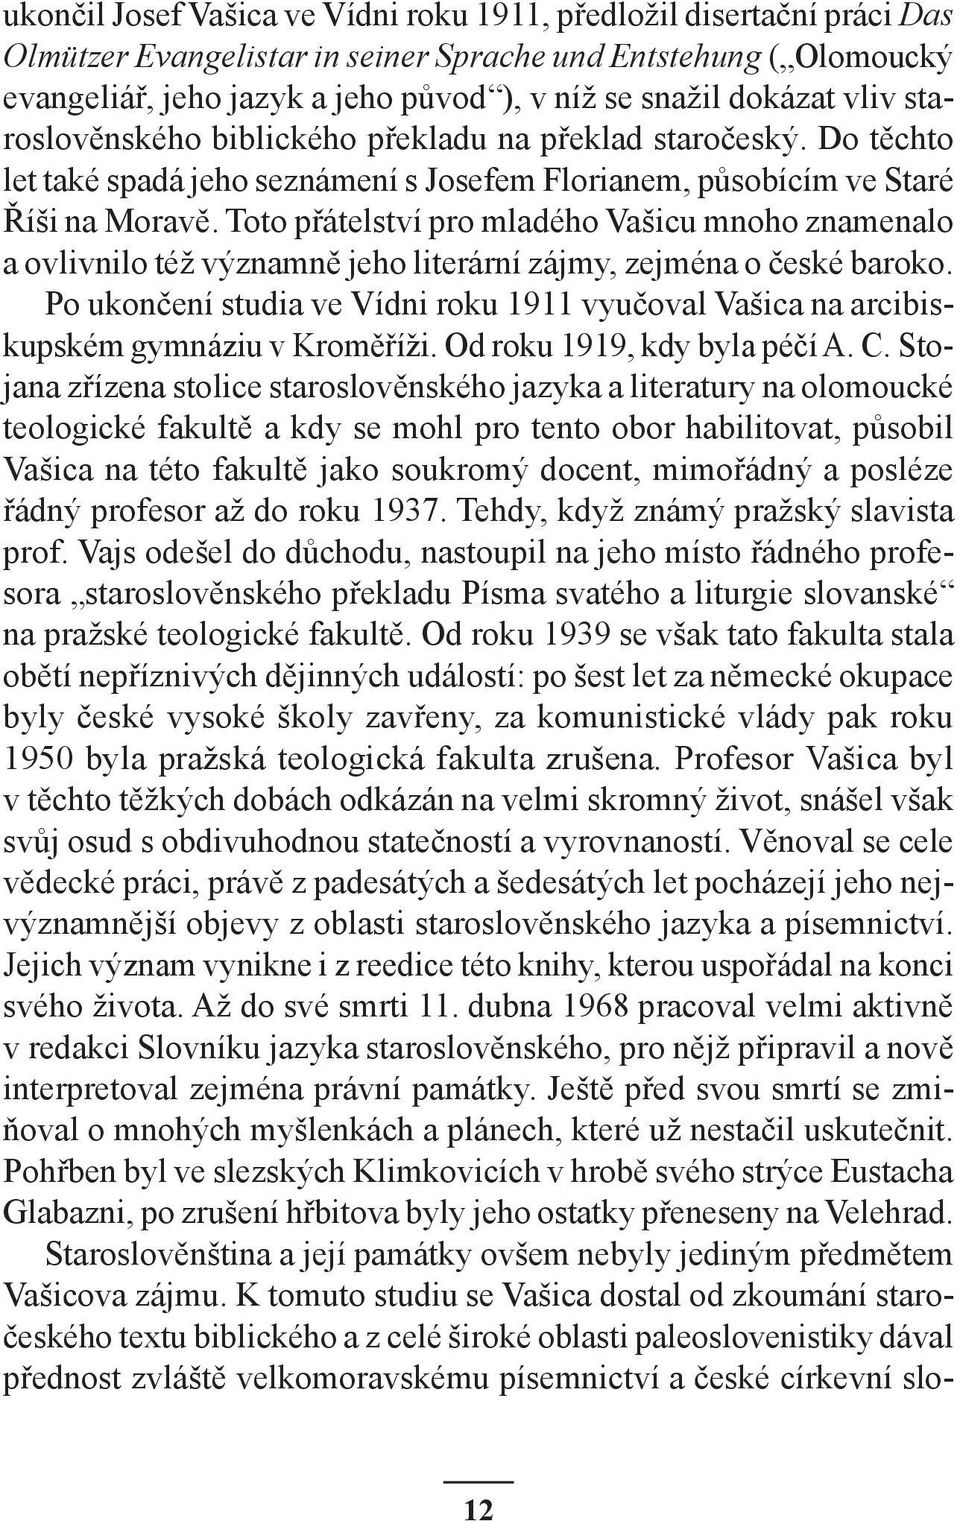 Toto přátelství pro mladého Vašicu mnoho znamenalo a ovlivnilo též významně jeho literární zájmy, zejména o české baroko.